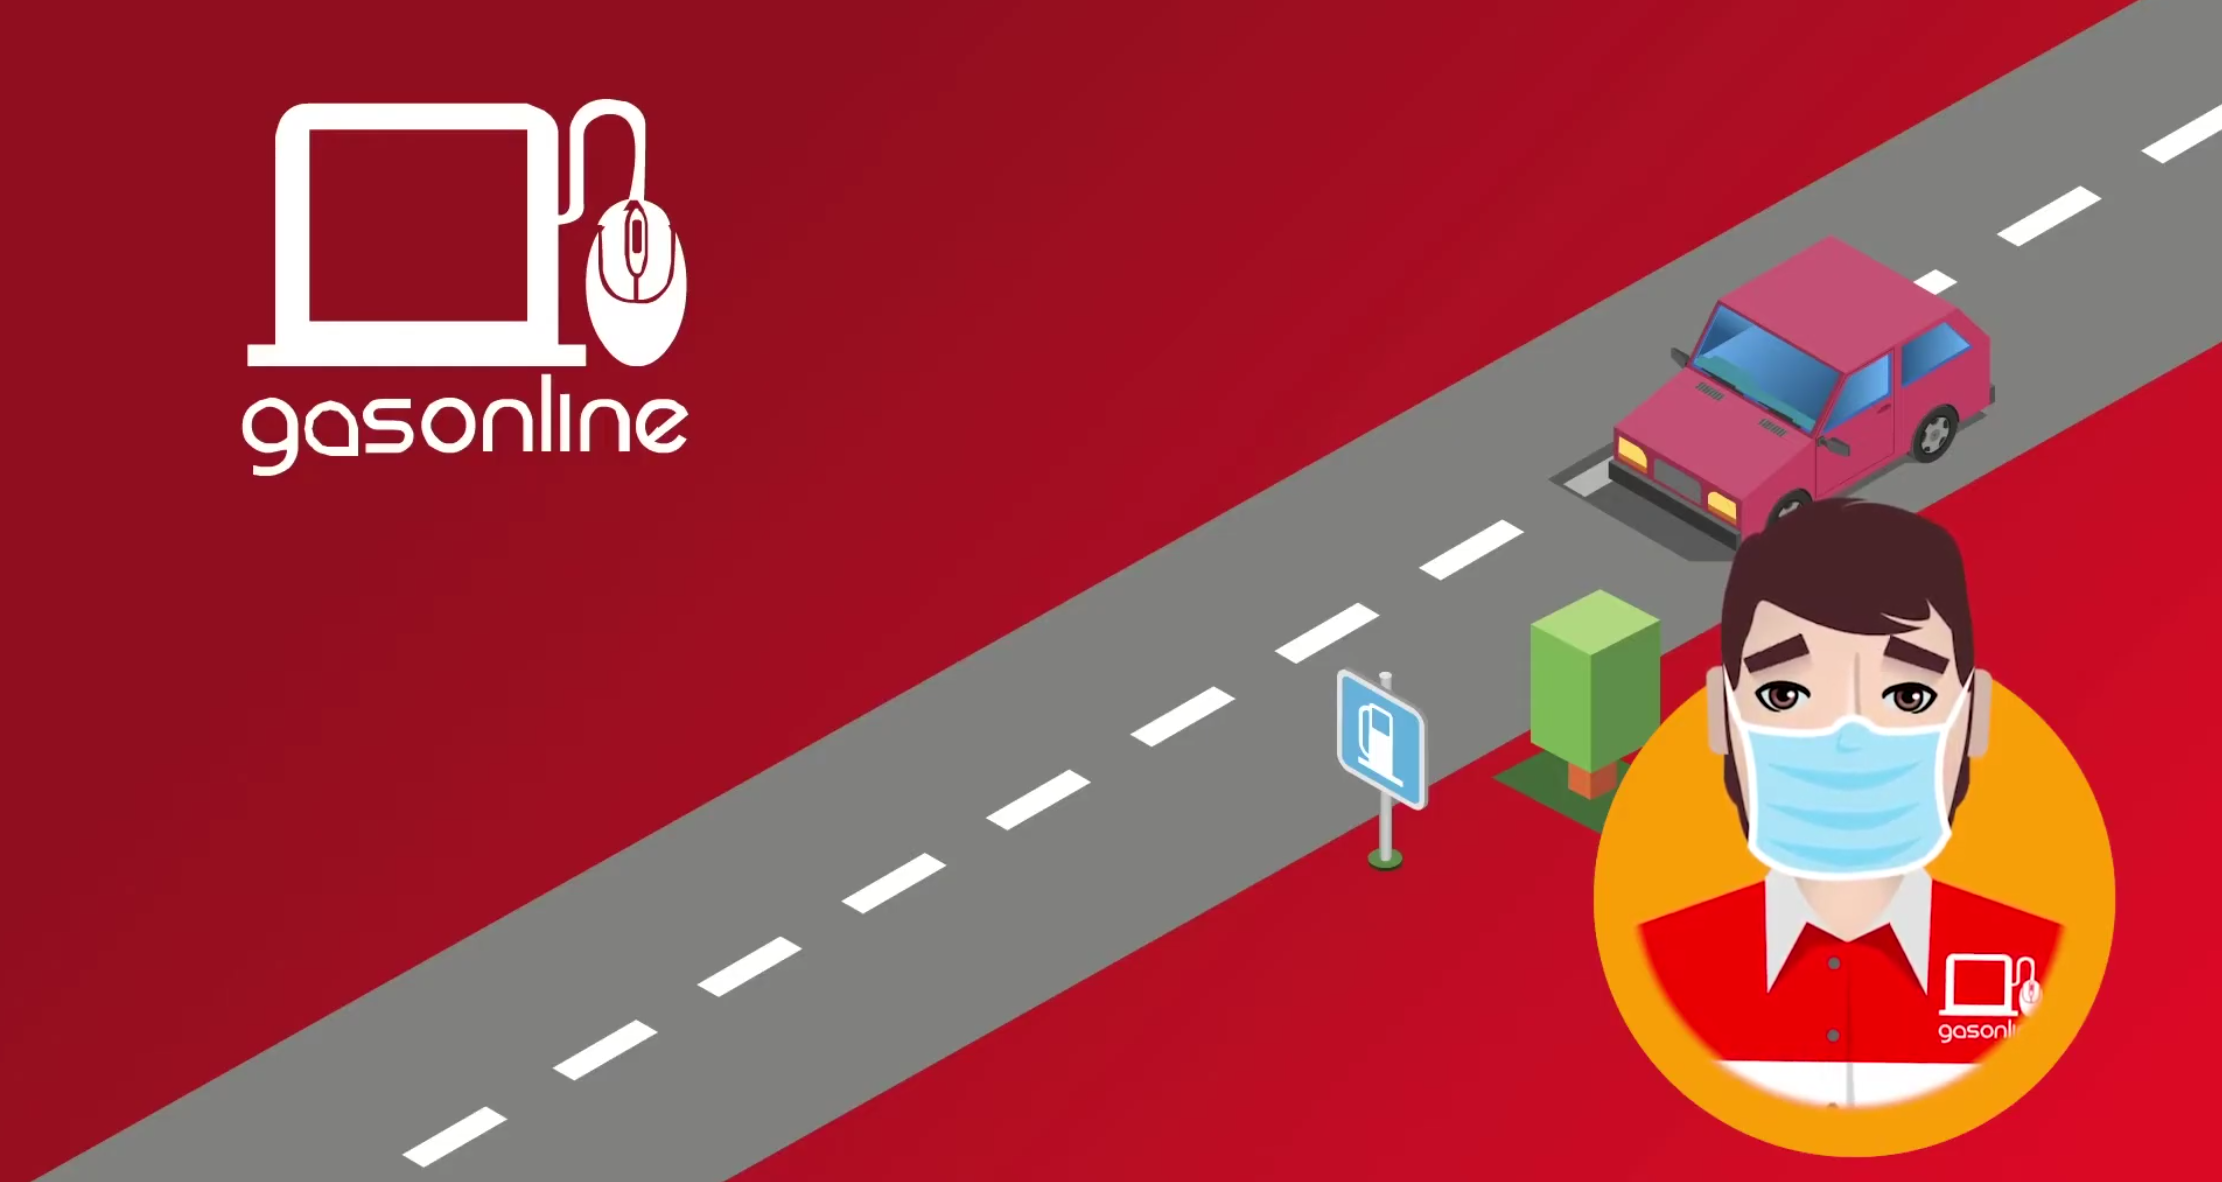 Gasonline es el primer sistema en el mundo para compra y venta de combustibles en línea